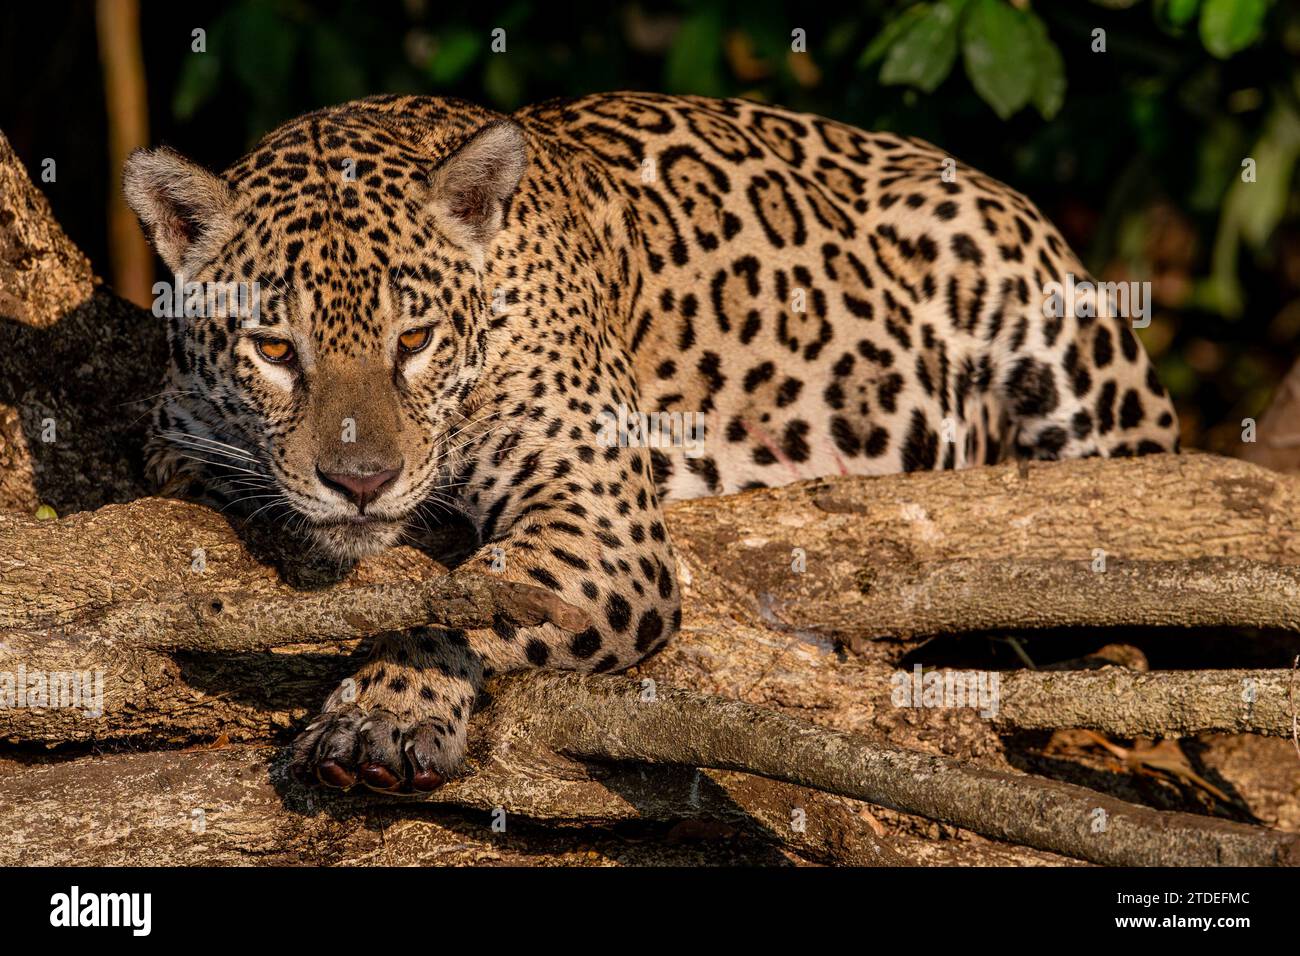 APEX Predator, Jaguar BRAZIL KOMISCHE Bilder von zwei jaguar Jungen, die einen playfight genossen und sich das Wasser abschütteln, wurden im Dschungel o aufgenommen Stockfoto